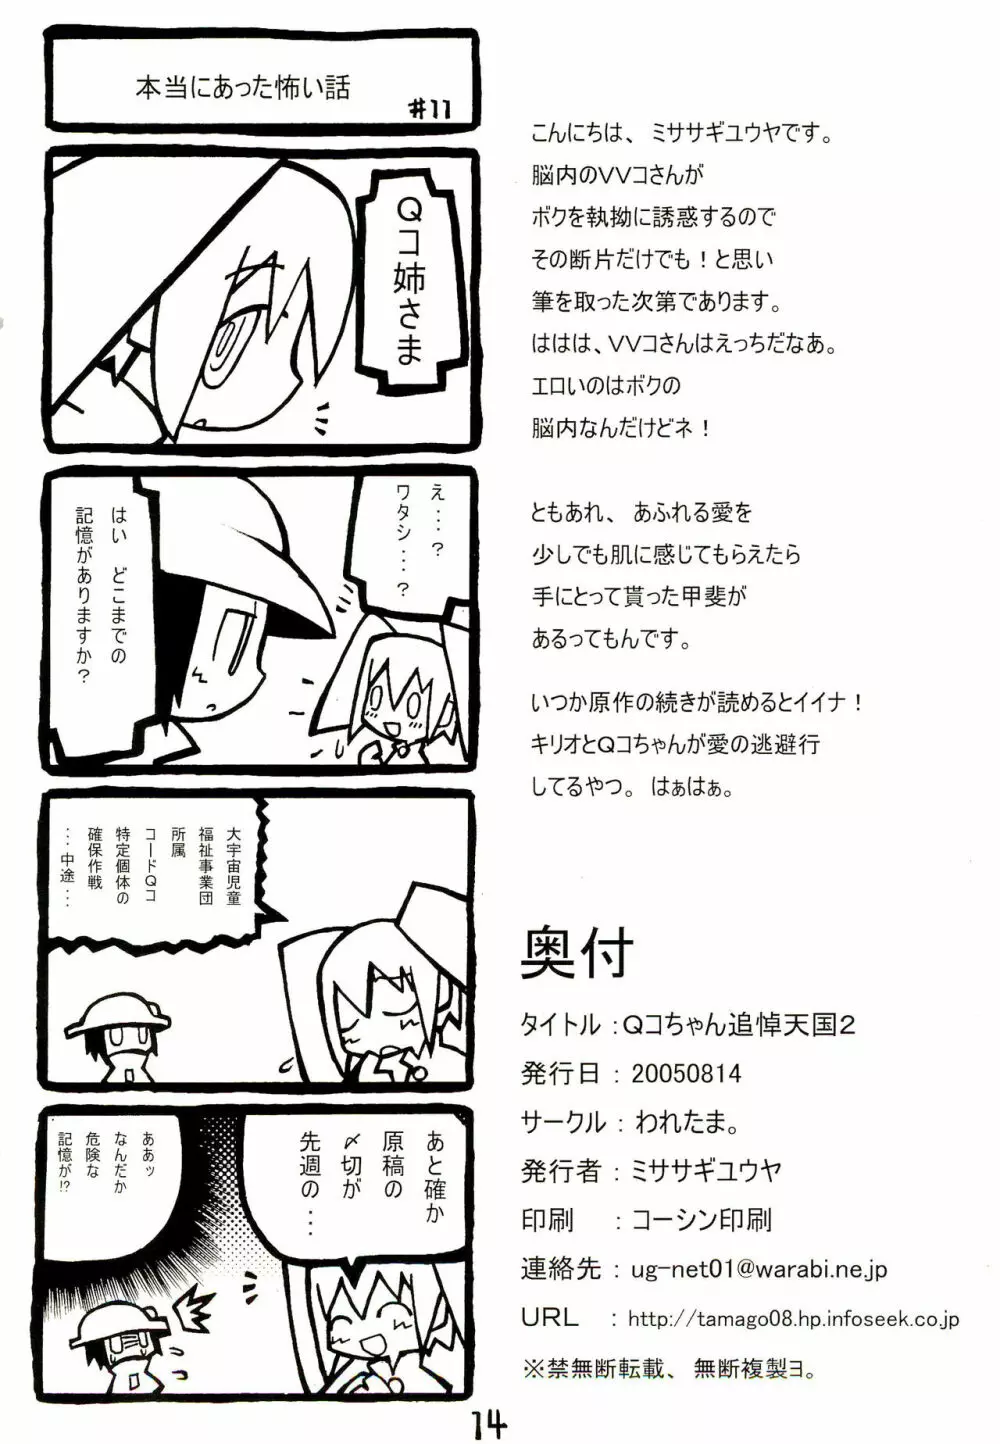 Qコちゃん追悼天国2 - page14